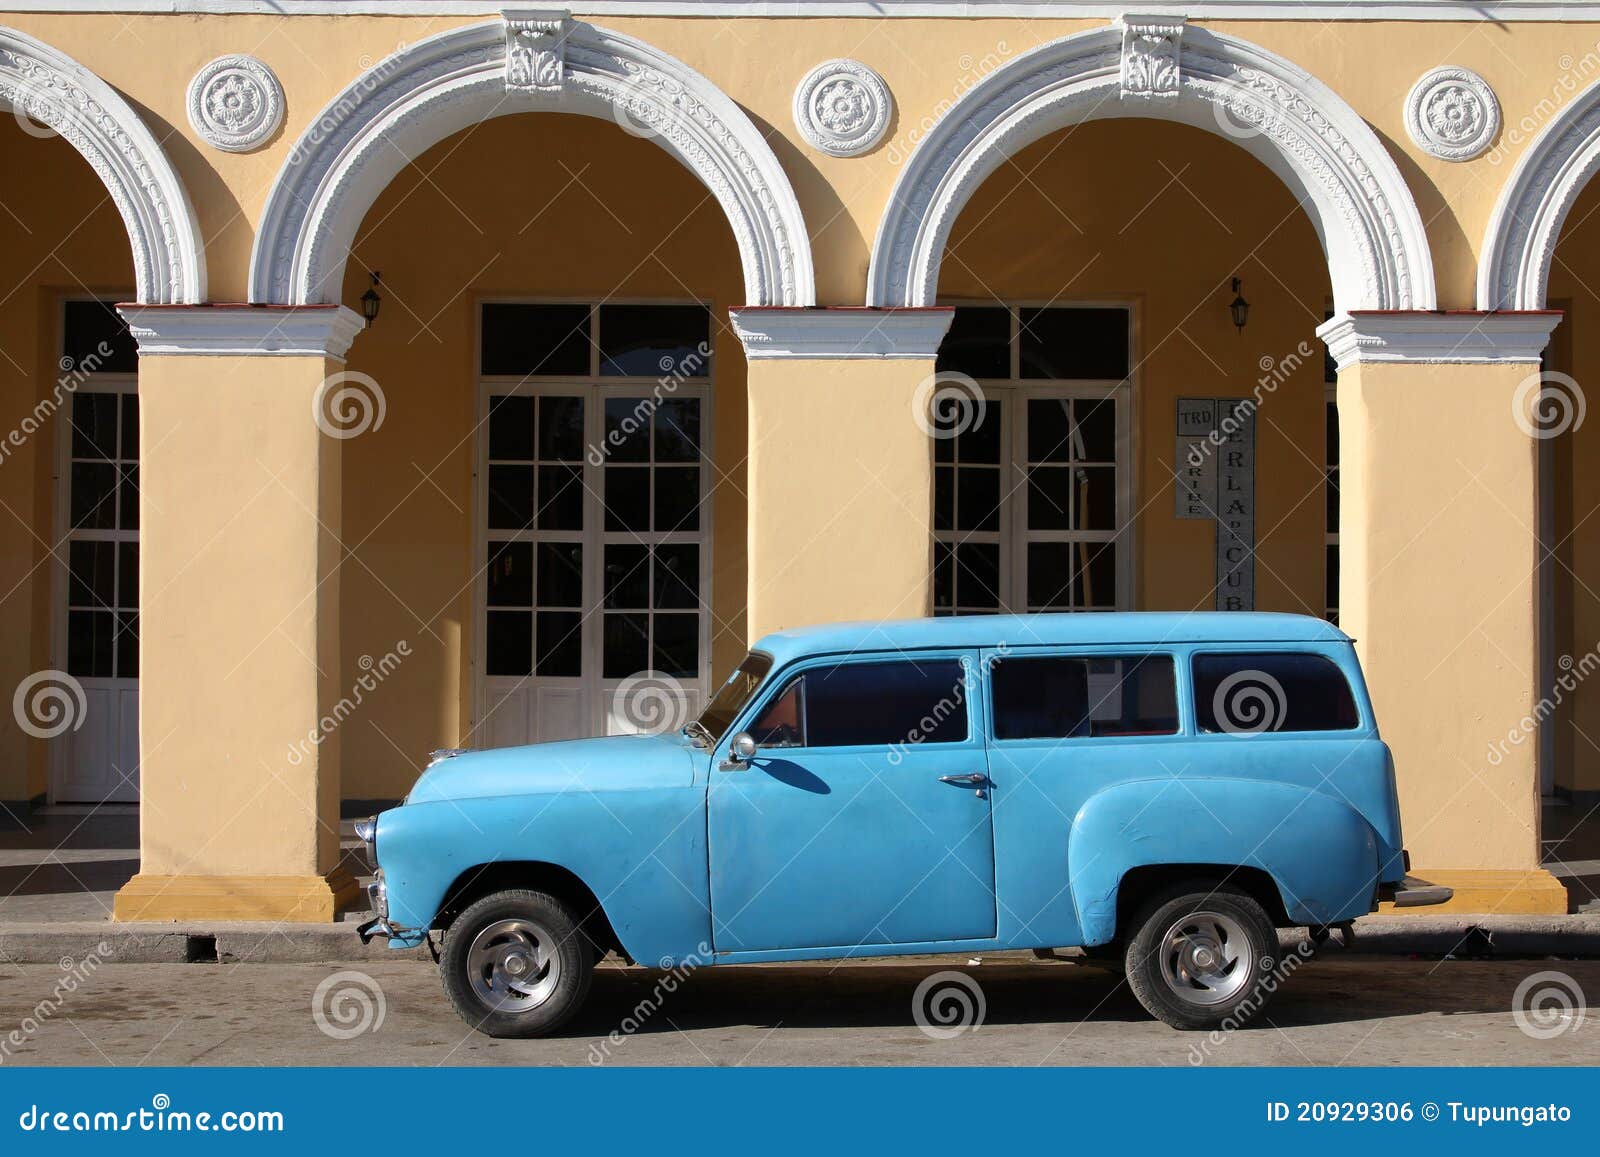 Cuba oldtimer. 6 2011 amerikanska dragningsbilbilar klassiska cuba februari dess viktiga turism för gata för spiritus för multitudeoldtimersancti